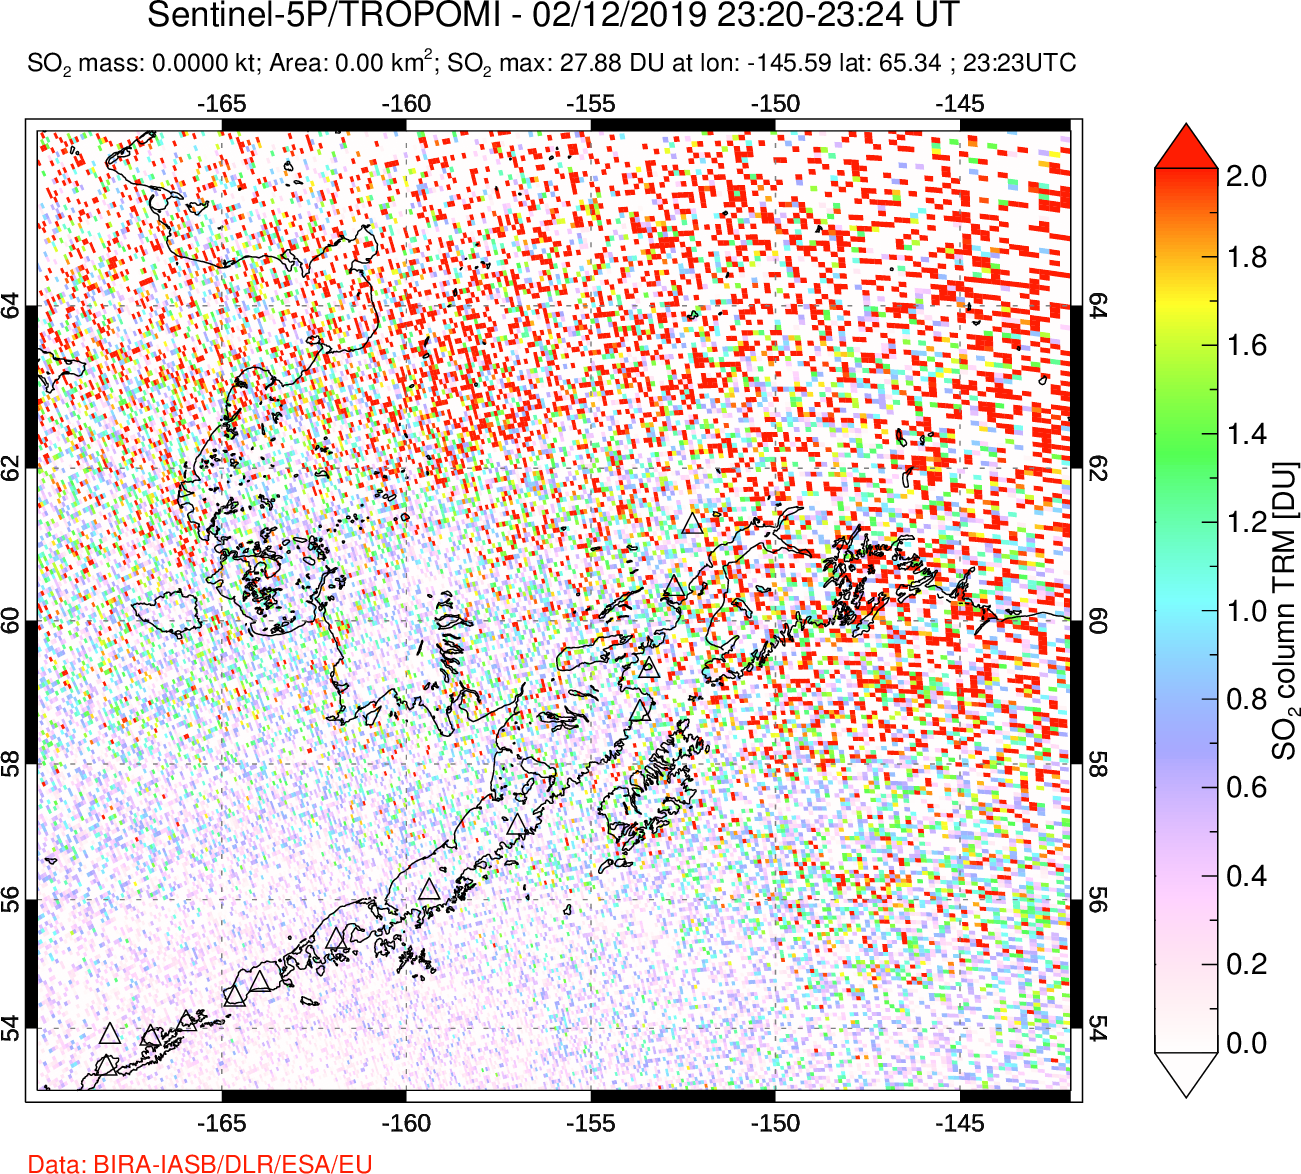 A sulfur dioxide image over Alaska, USA on Feb 12, 2019.